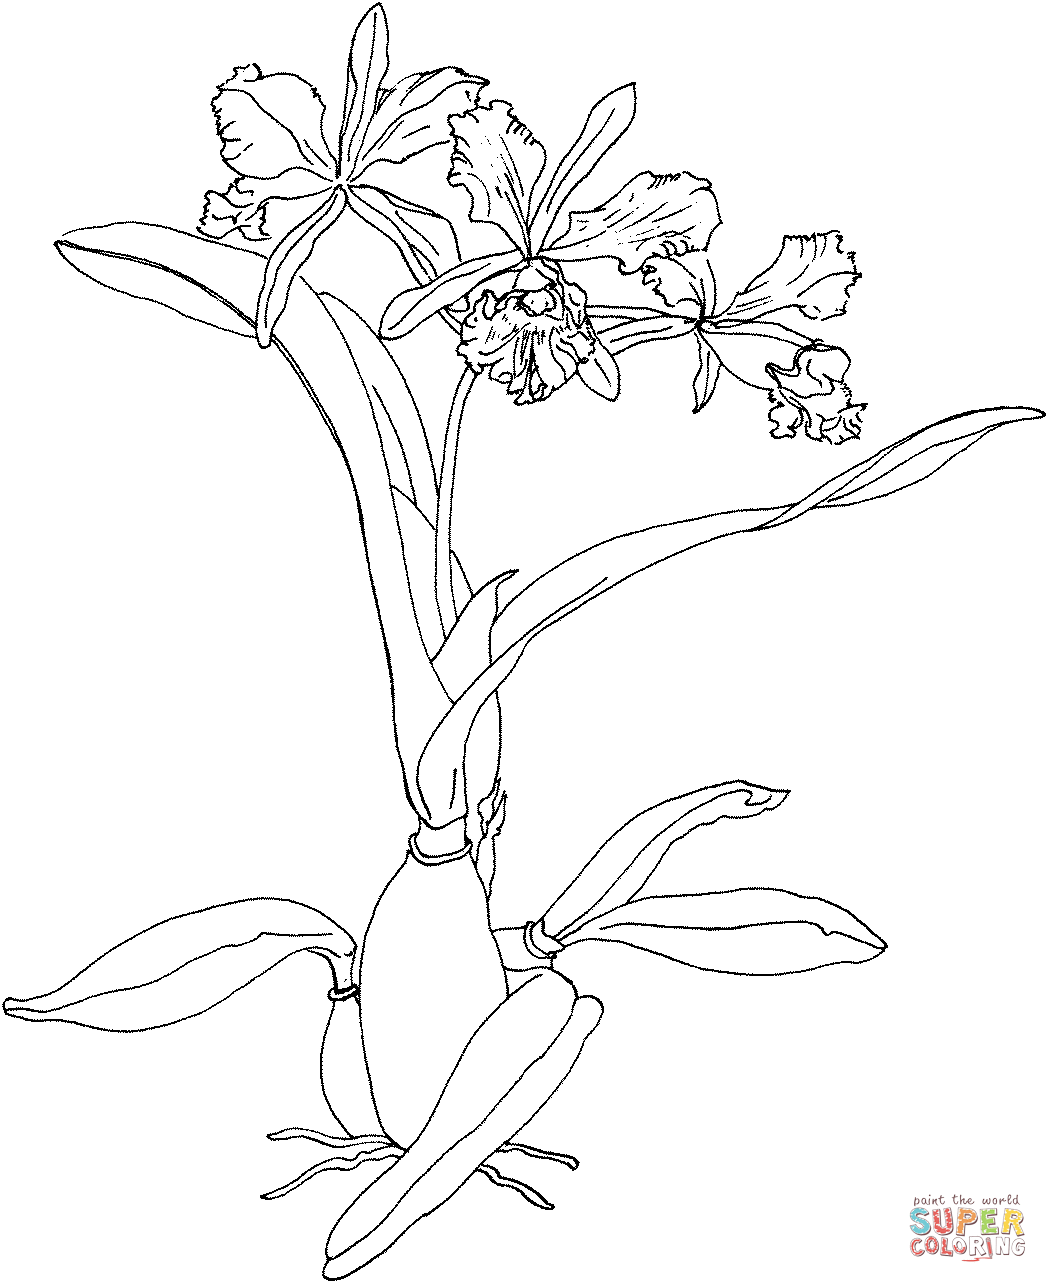 Cattleya Maxima or Christmas Orchid Coloring Pages - Orchid Coloring Pages  - Páginas para colorear para niños y adultos